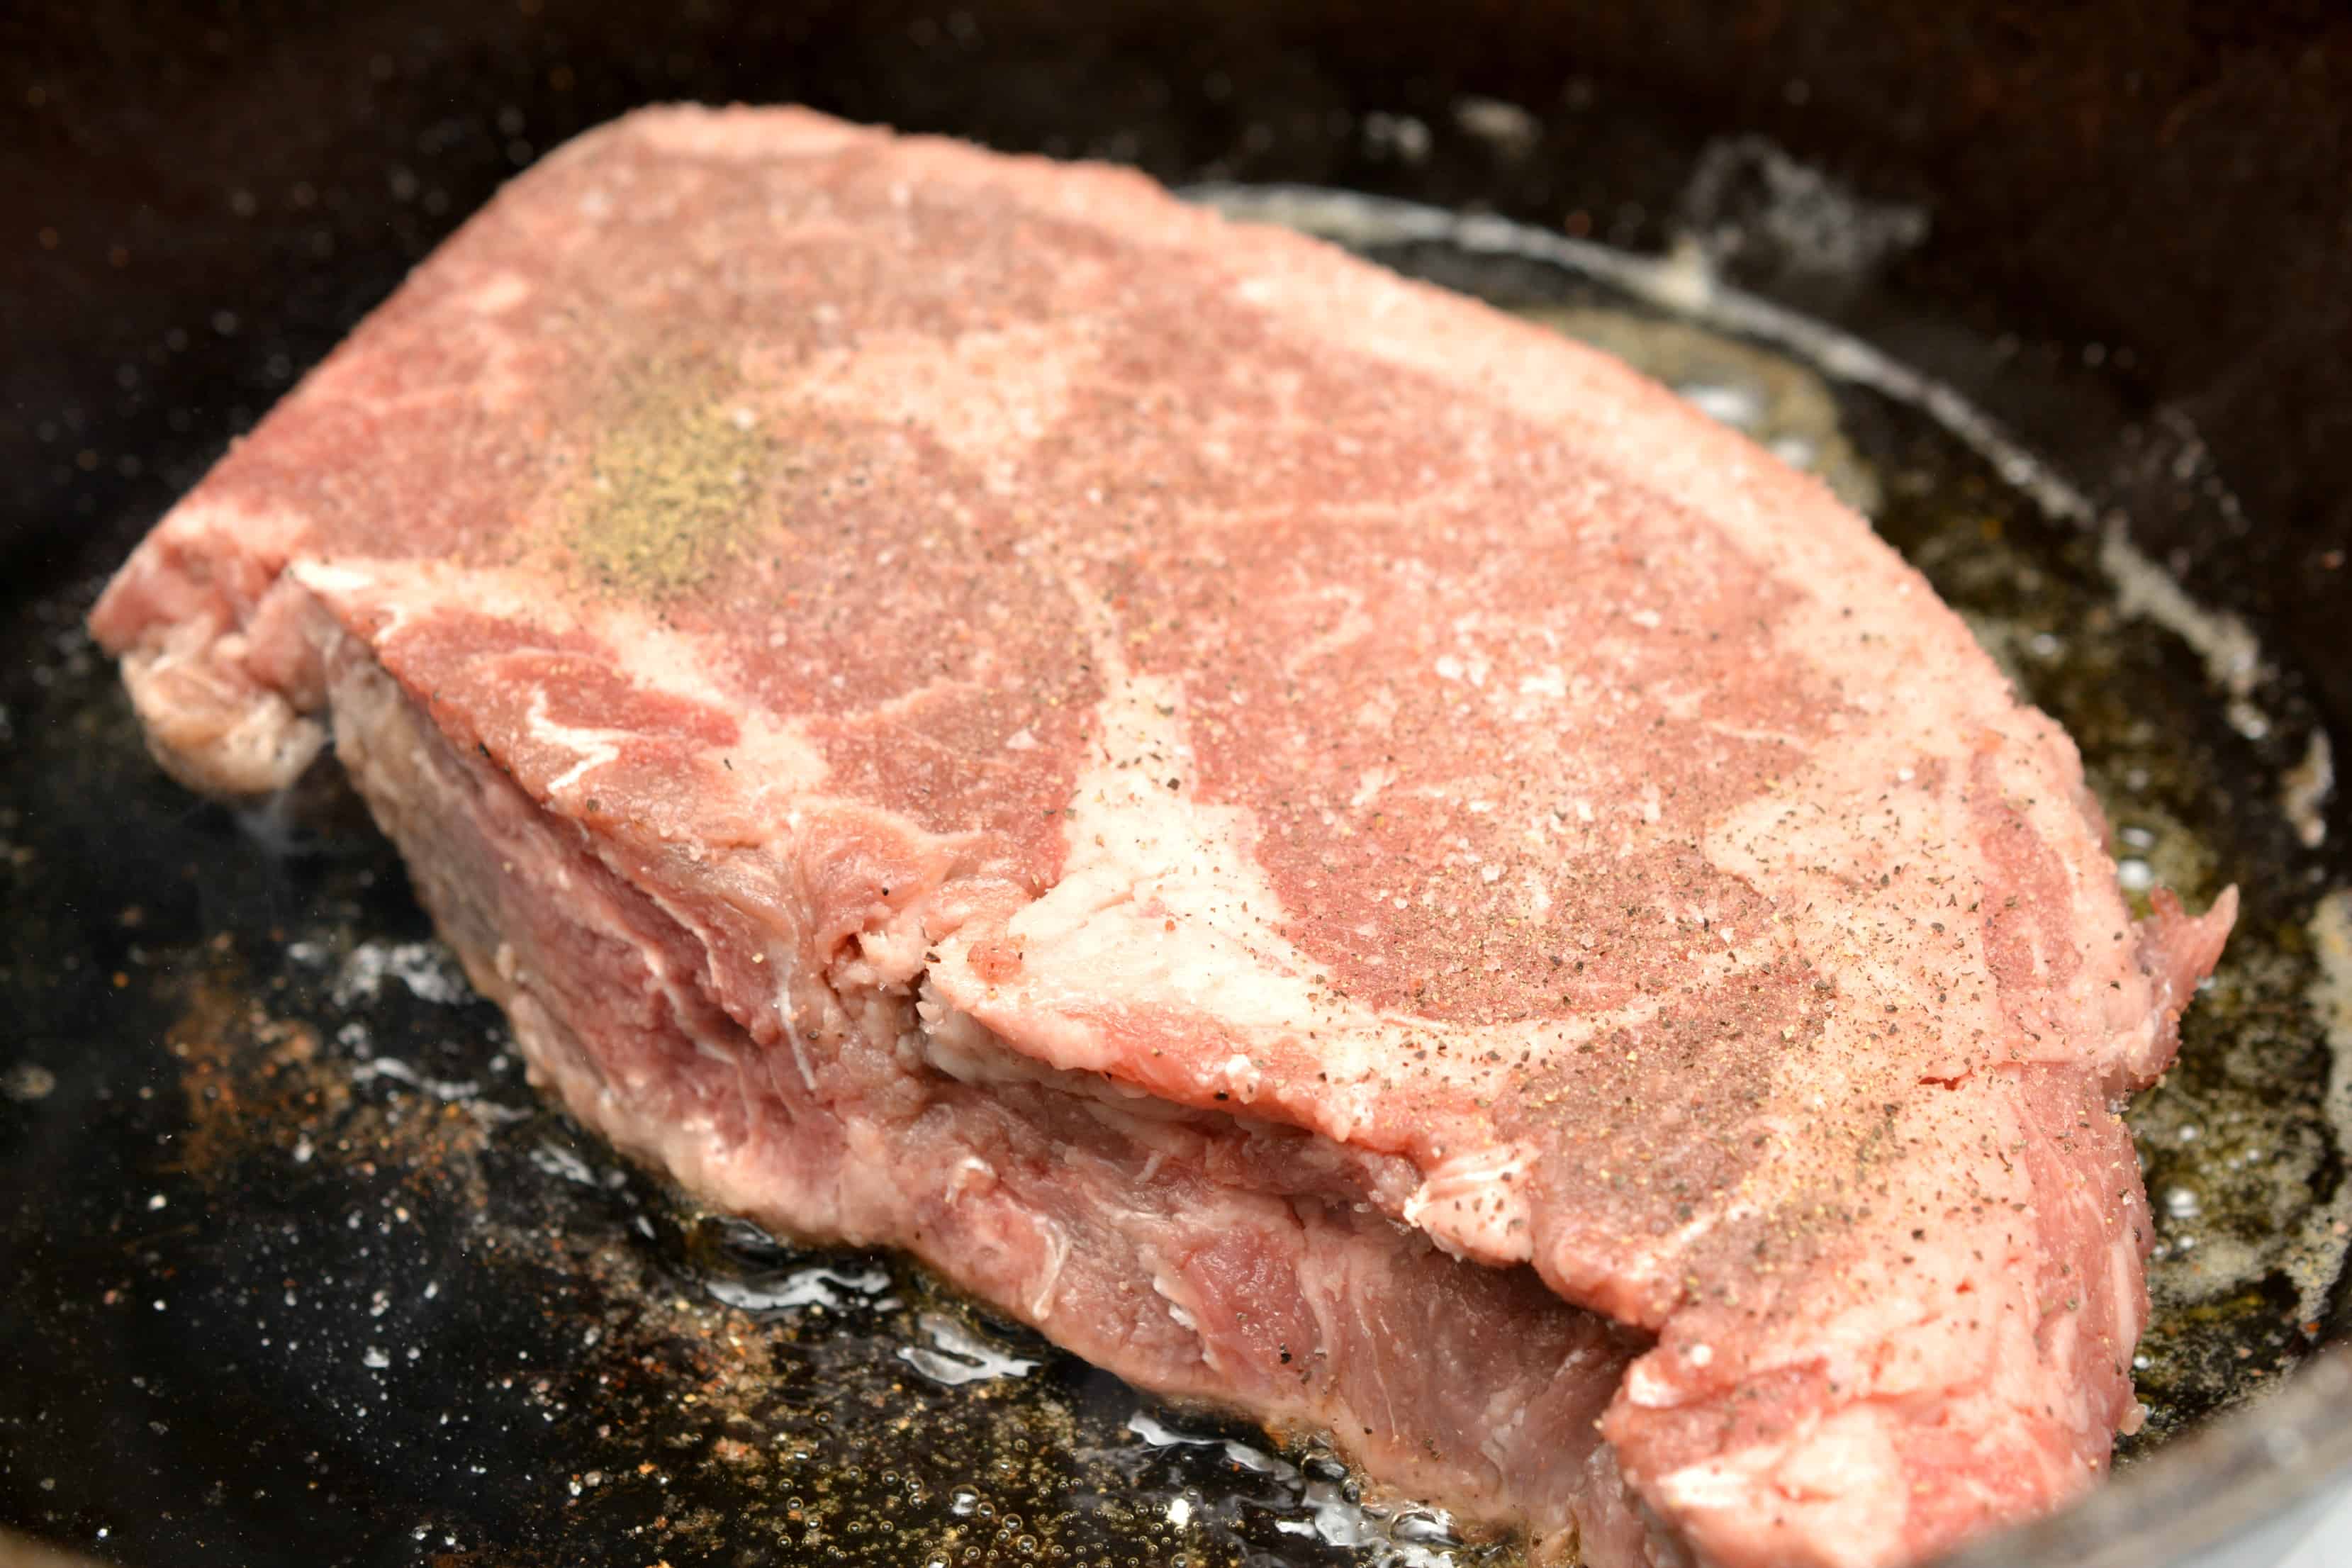 seasoned raw steak in cast iron skillet